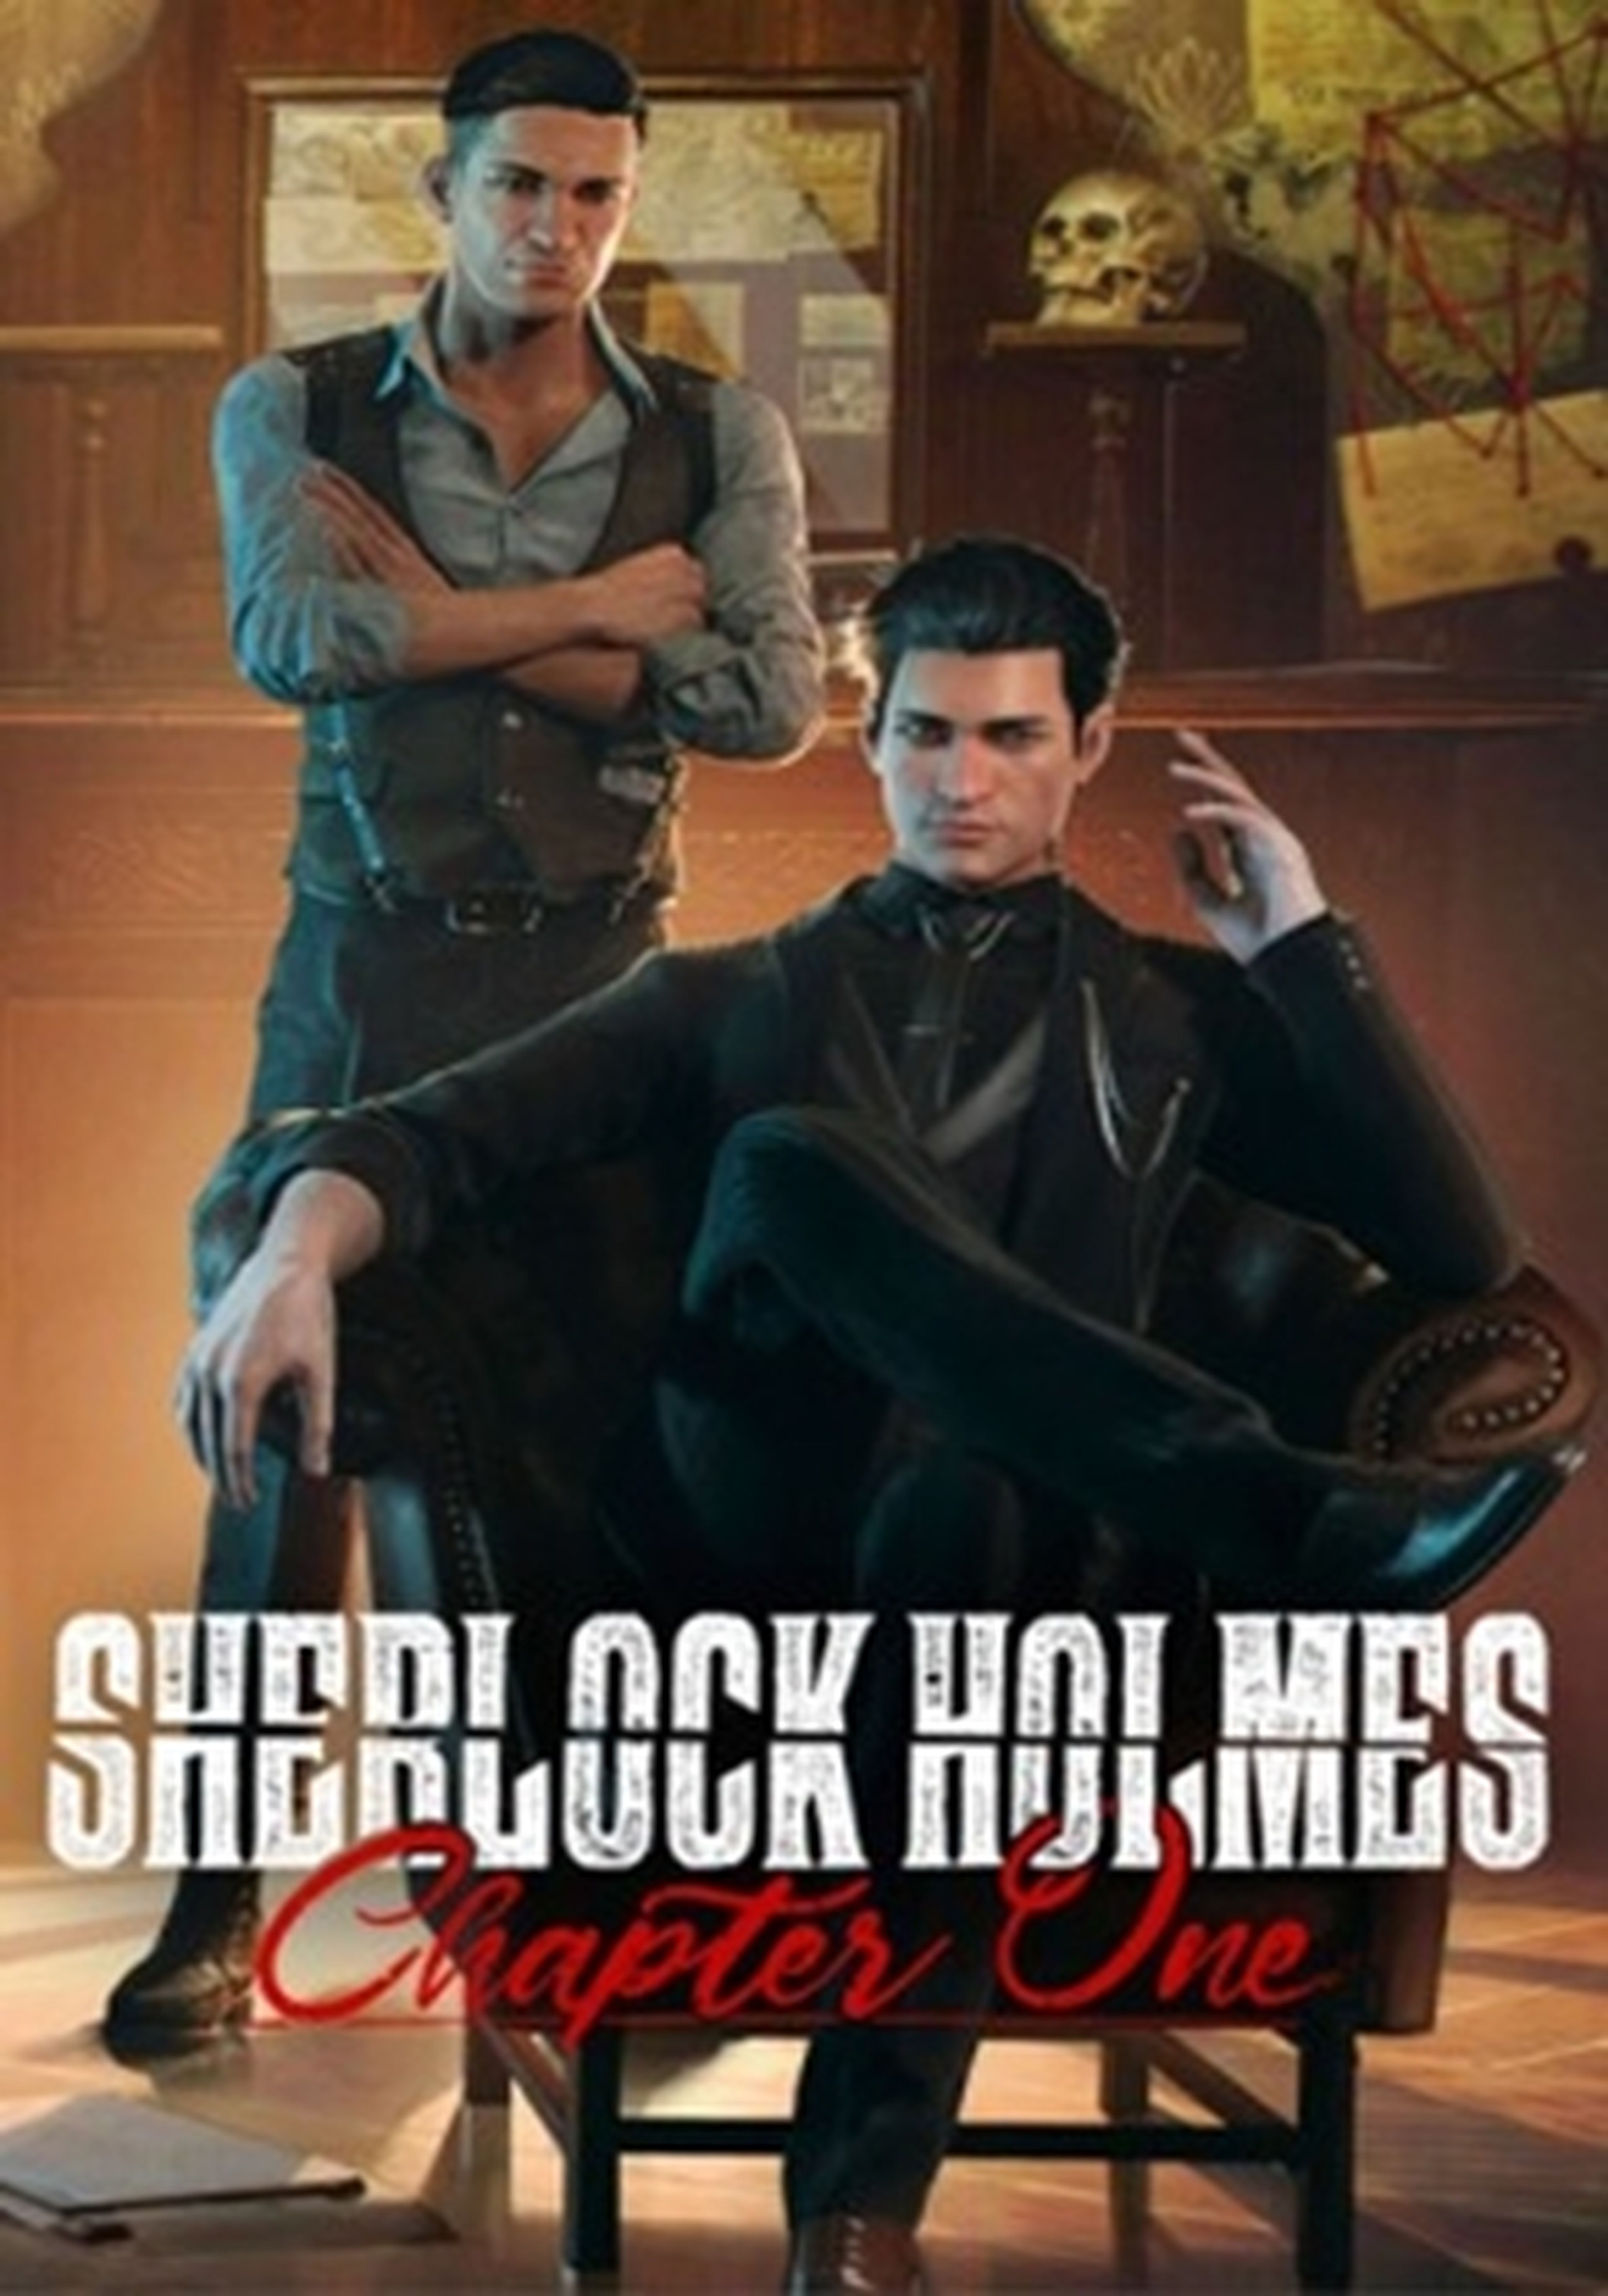 Sherlock Holmes Chapter One cartel